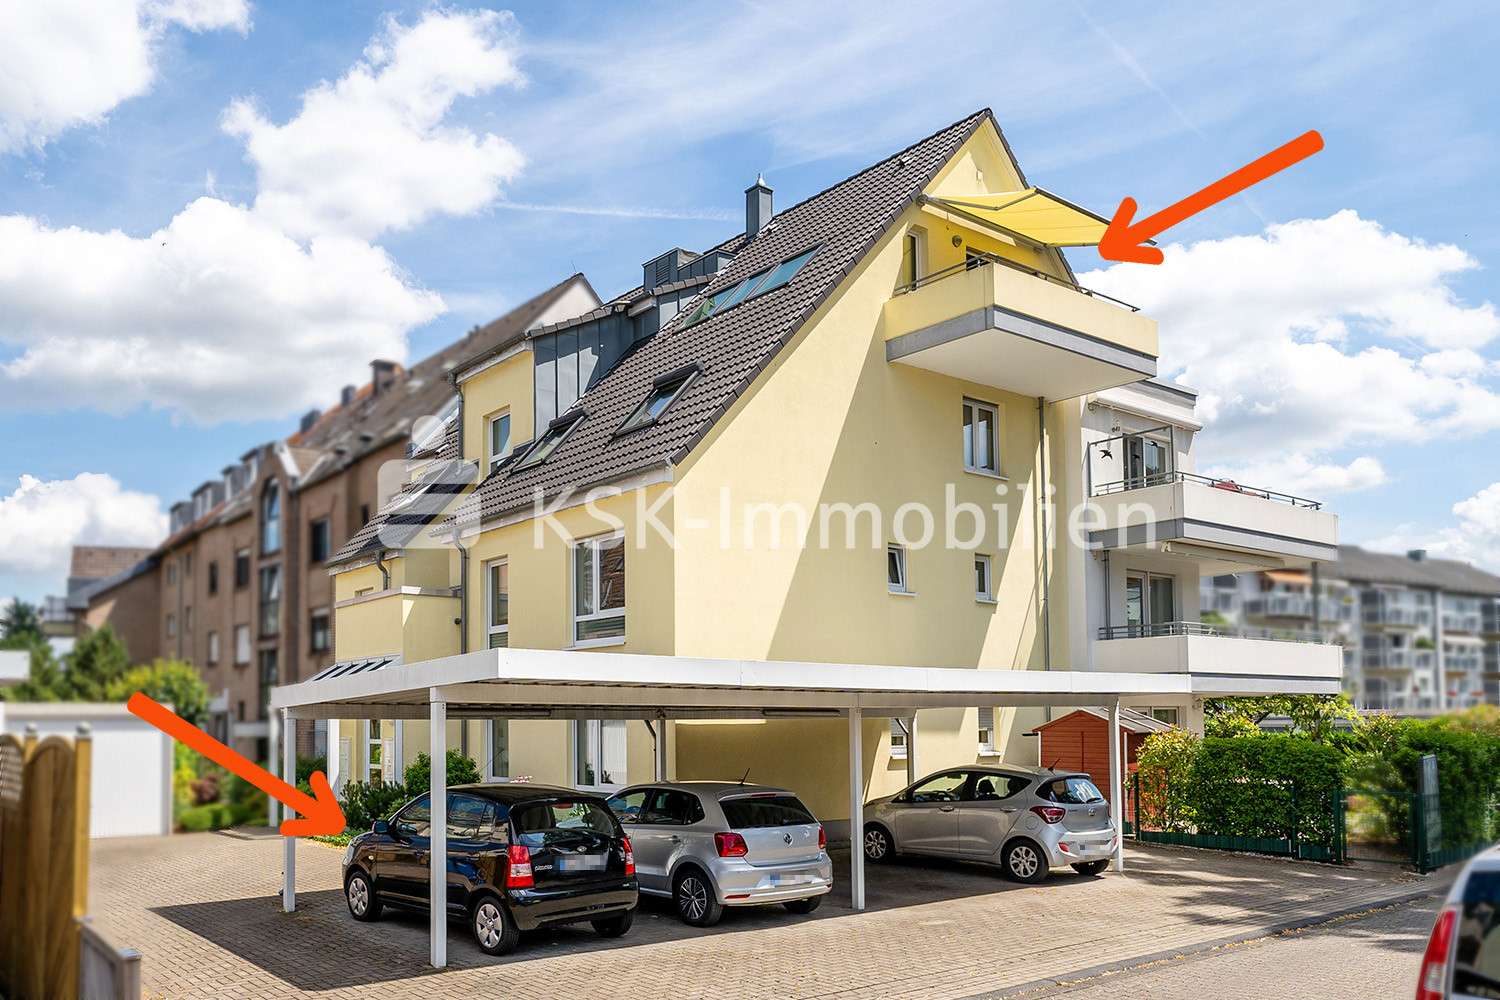 118141 Carport - Dachgeschosswohnung in 42799 Leichlingen (Rheinland) mit 80m² kaufen